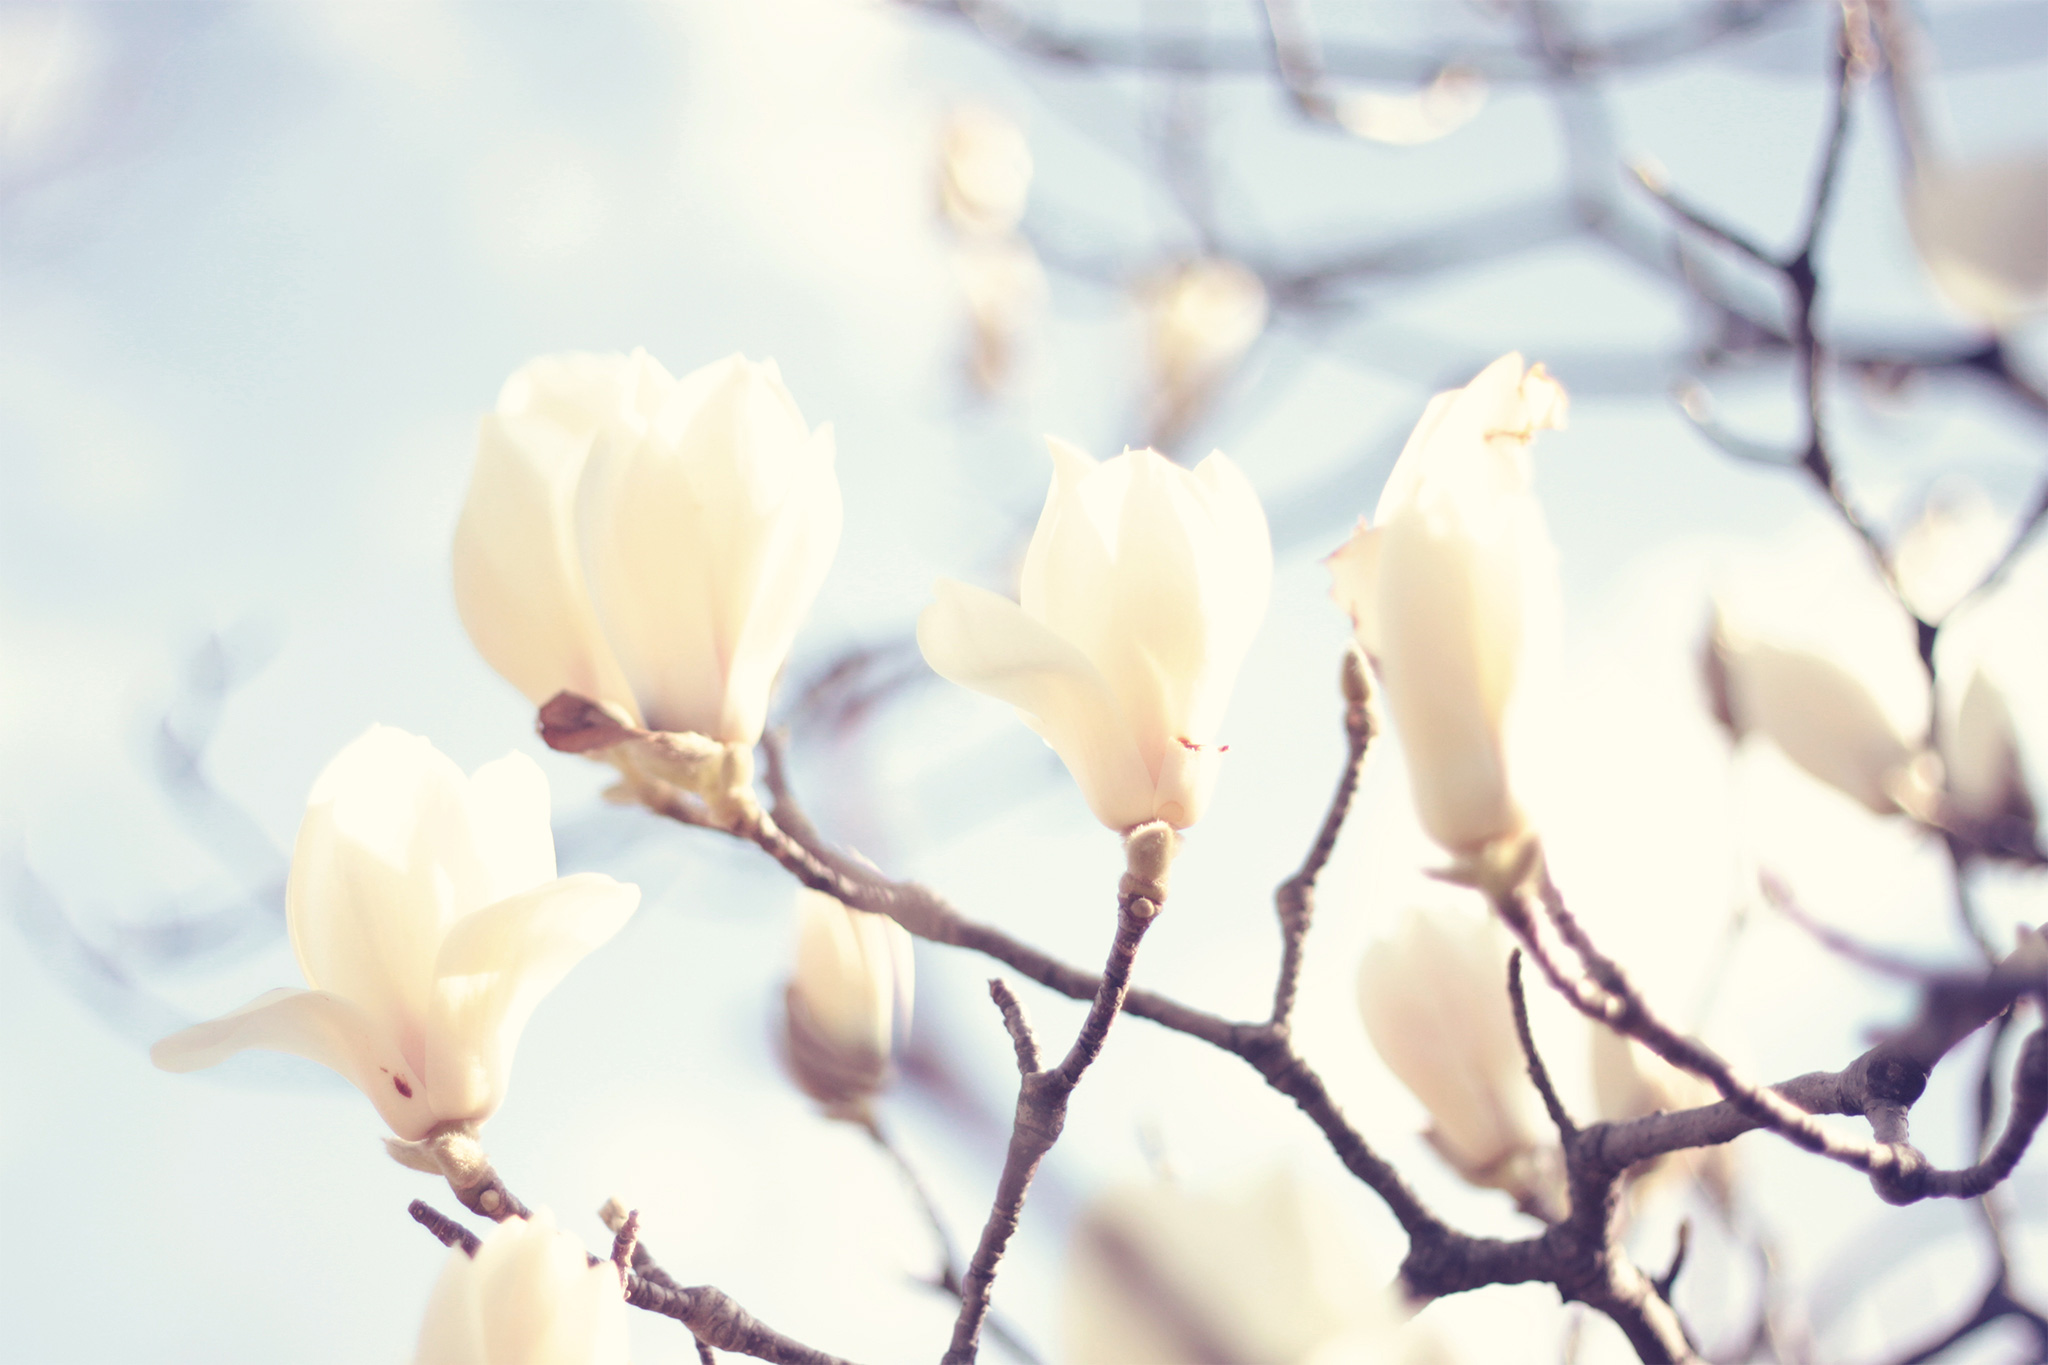 可憐で可愛らしい白木蓮 ハクモクレン の花たちのフリー画像 おしゃれなフリー写真素材 Girly Drop